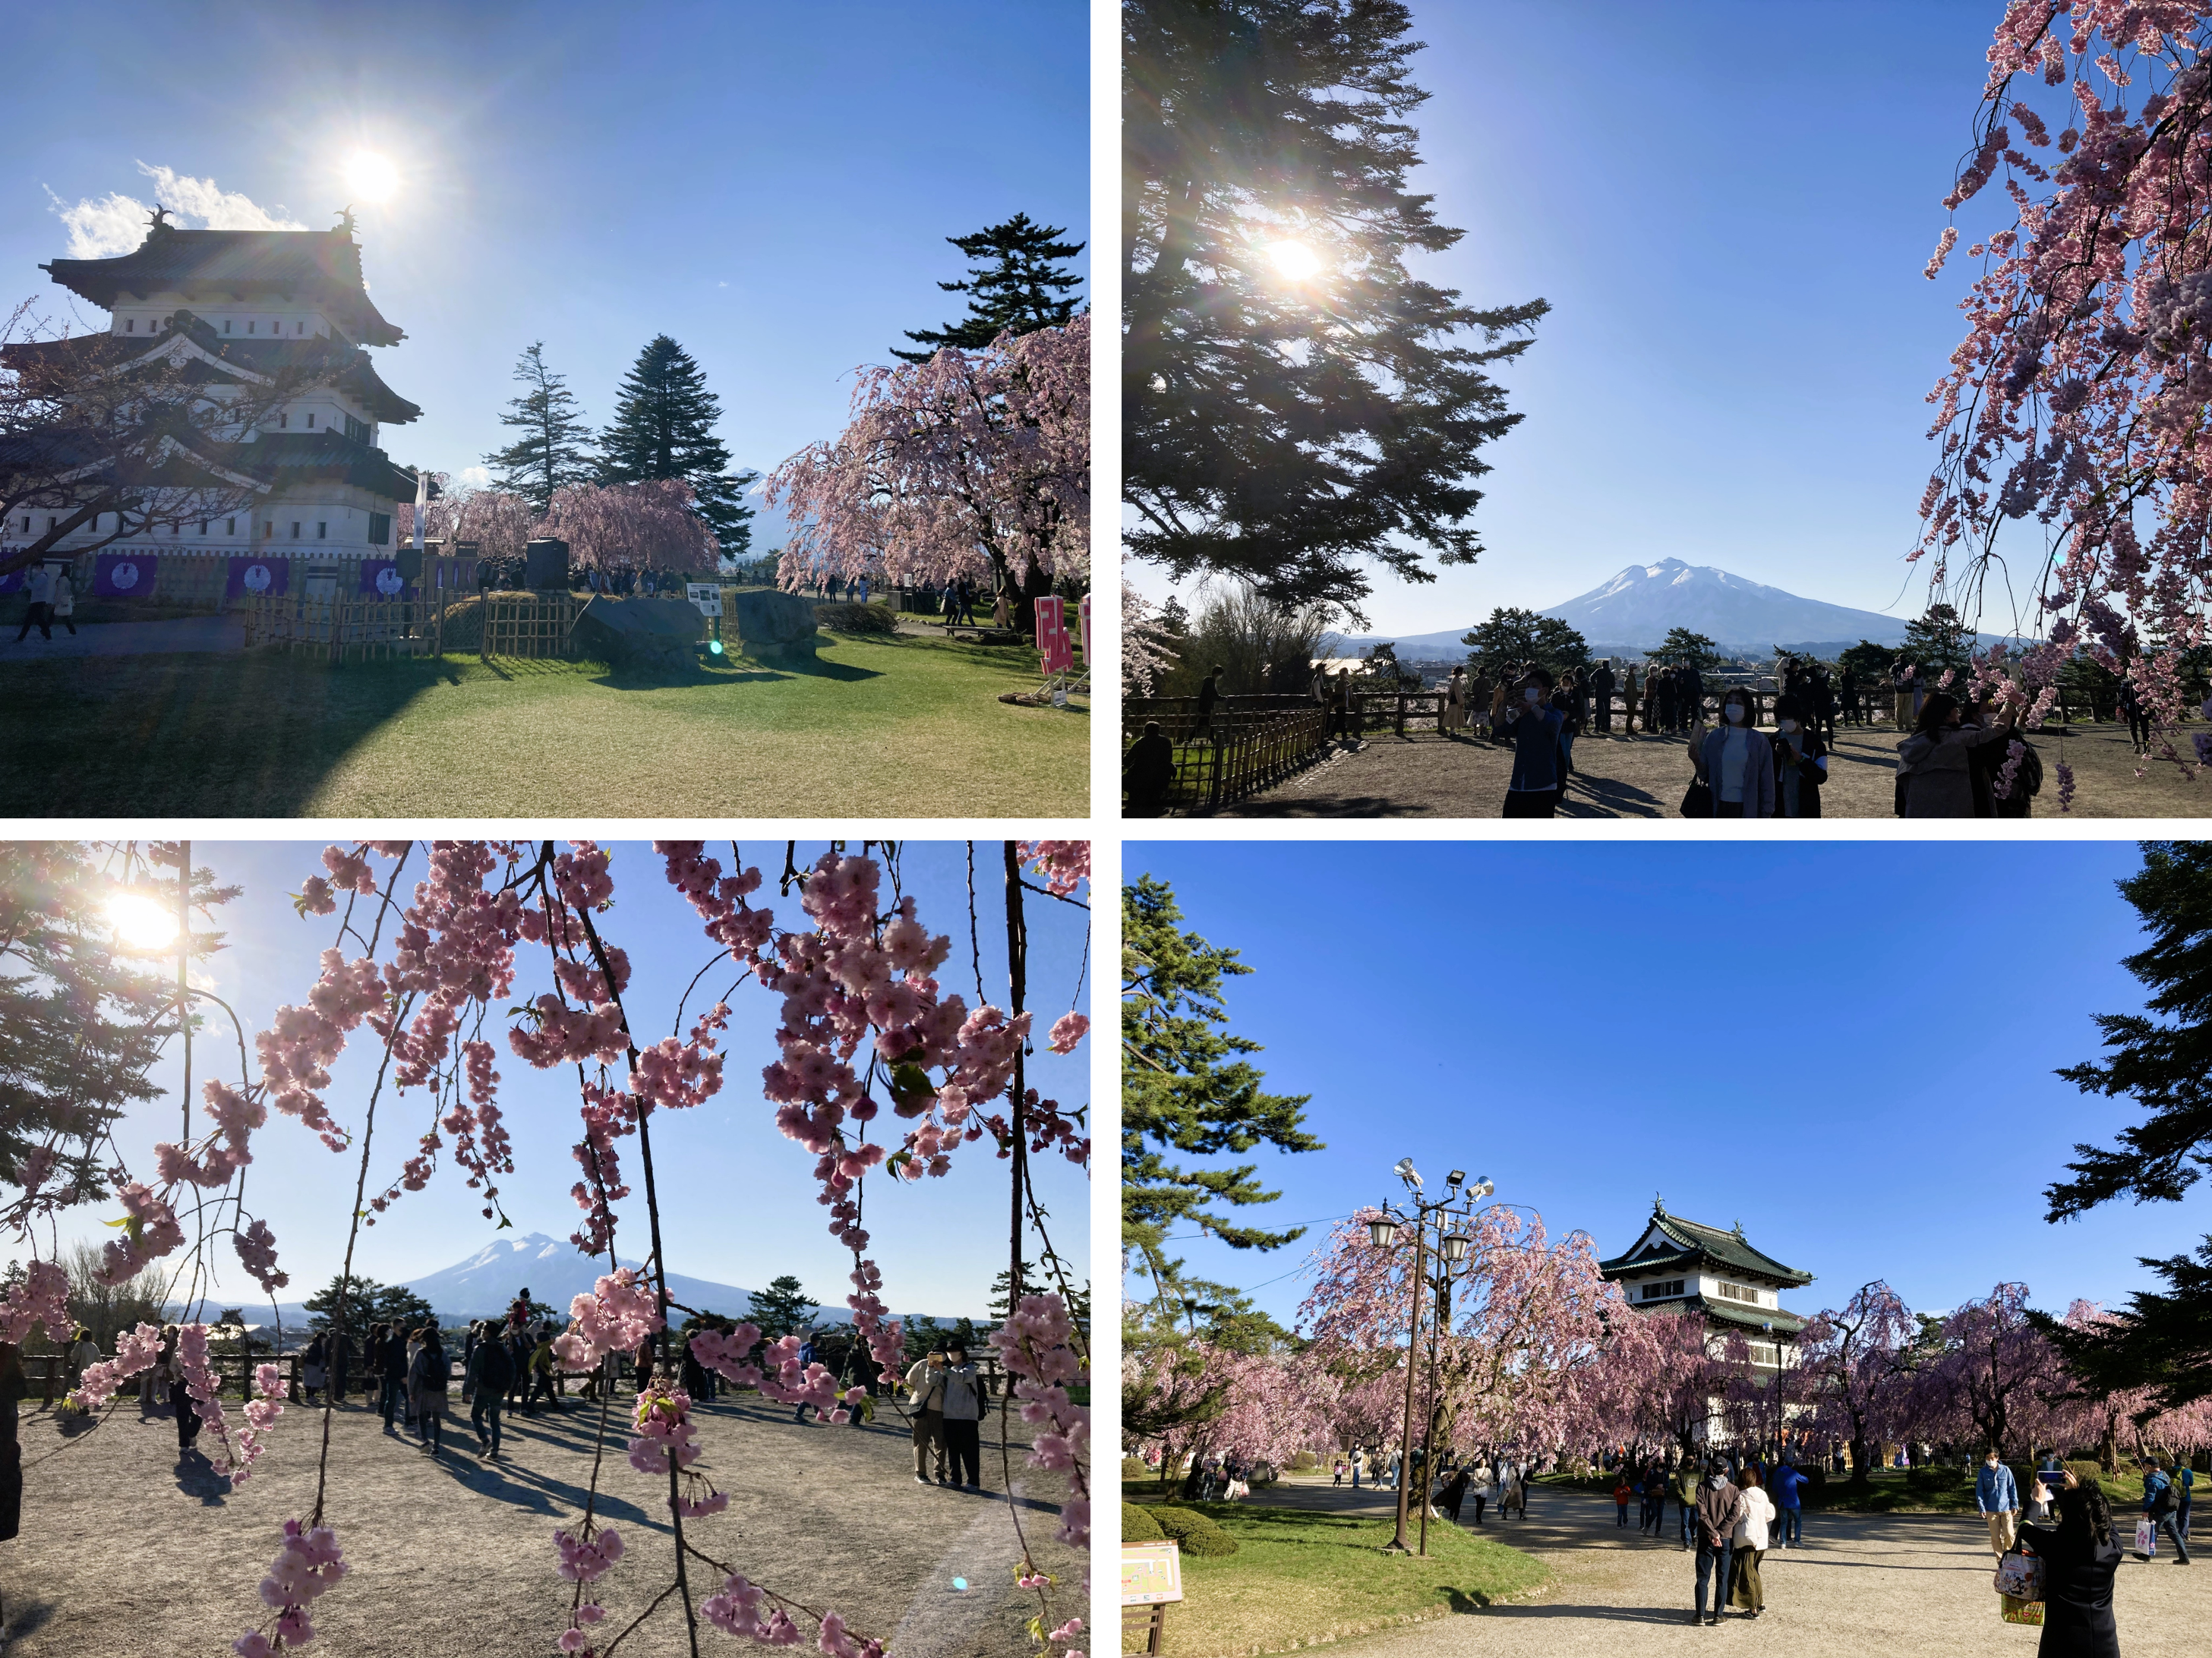 見どころ・花見スポット・楽しみ方！弘前さくらまつりは青森県弘前市の弘前公園（弘前城）で開催する、毎年約200万人がお花見を楽しむ日本一の桜祭りです。弘前さくらまつりの見どころ・お花見スポット・楽しみ方についてご紹介します。弘前公園の桜の名所・見どころ！弘前さくらまつり期間の弘前公園の朝、昼、夜の見どころや桜の開花状態別の楽しみ方をご紹介します。弘前公園のおすすめ撮影スポット！弘前さくらまつり期間の弘前公園の撮影スポット・おすすめスポットをご紹介します。